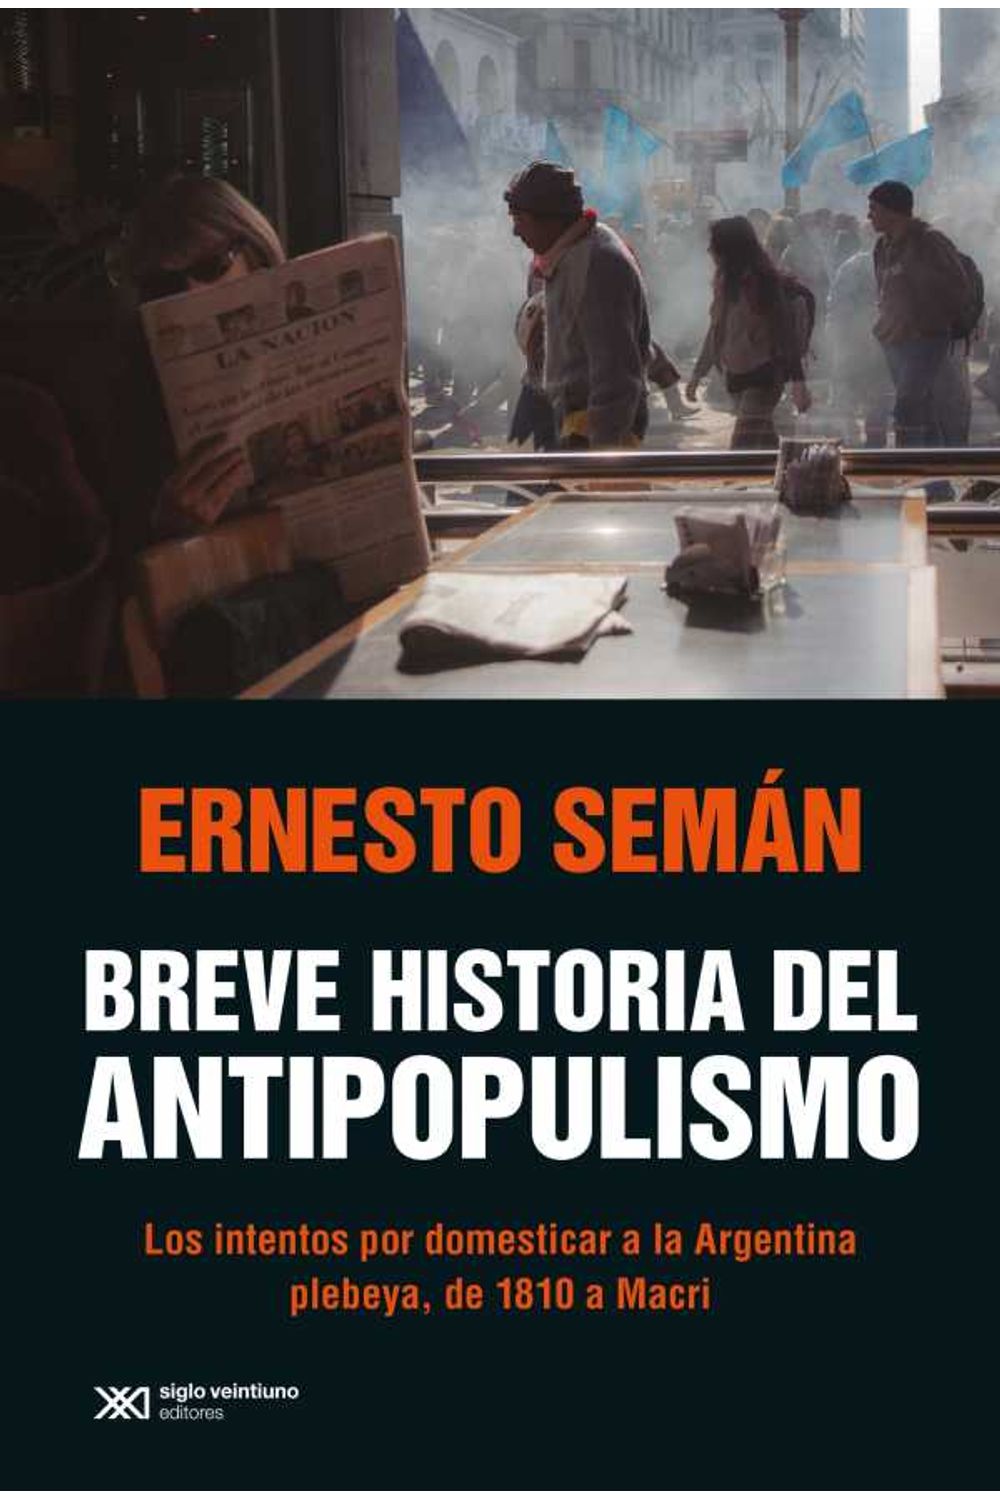 bw-breve-historia-del-antipopulismo-siglo-xxi-editores-9789878010830